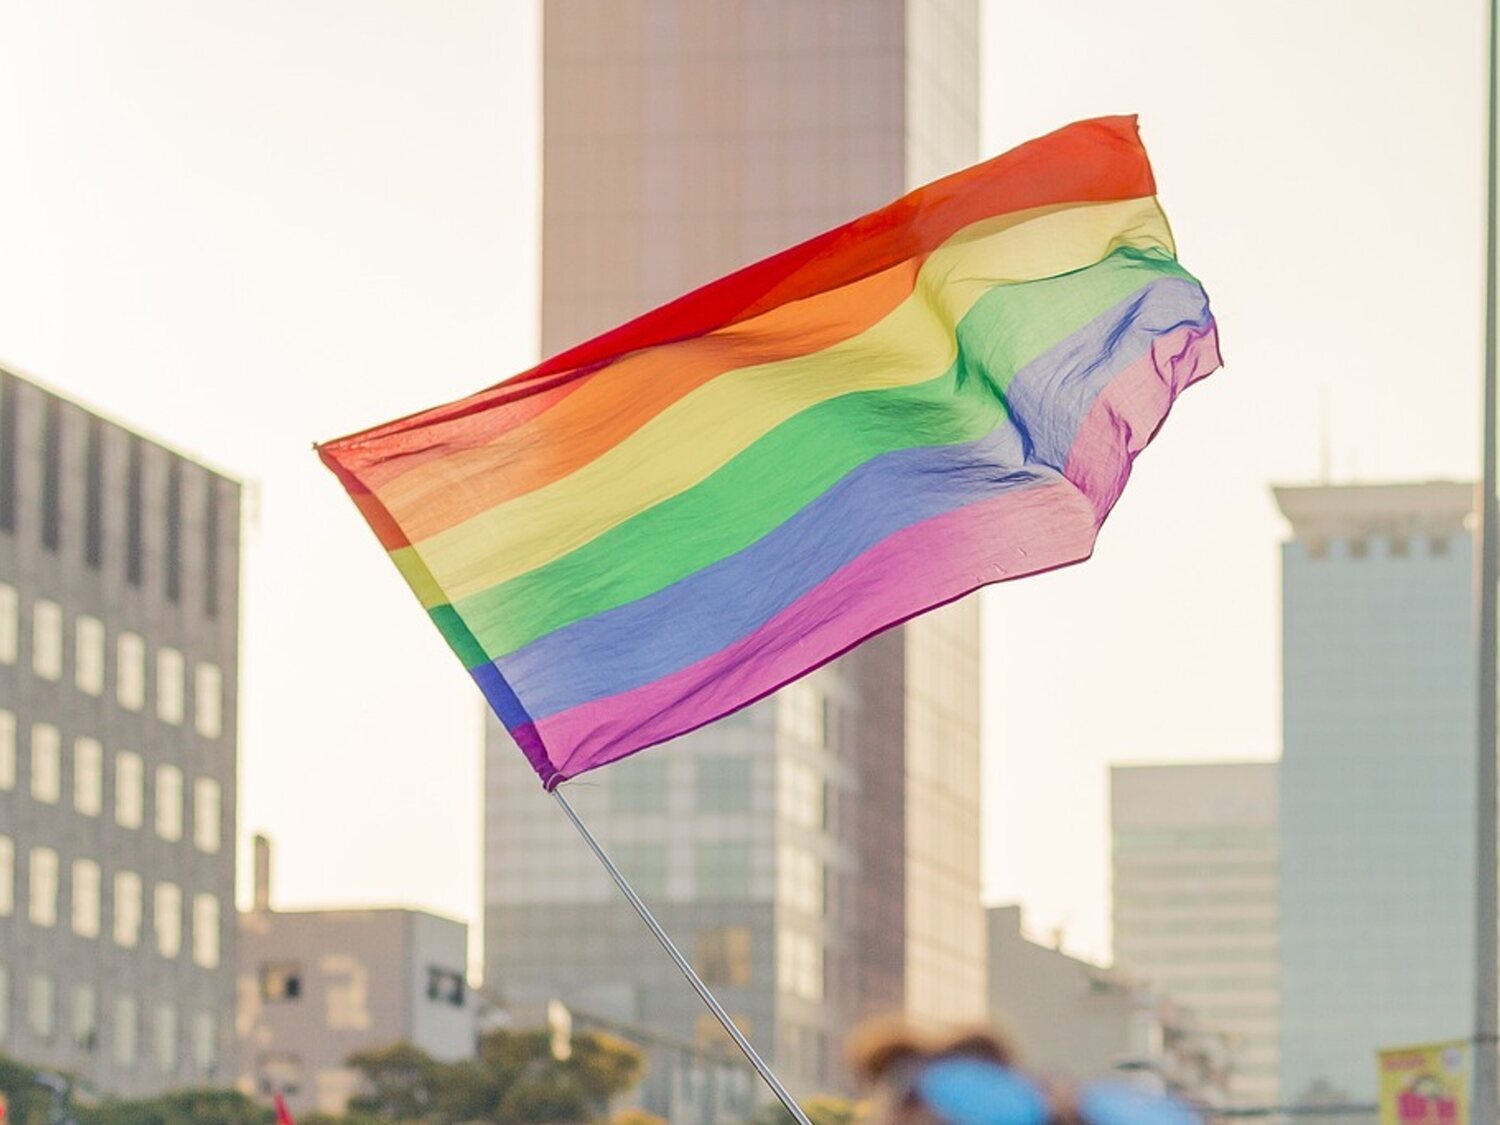 El PSOE reclama ampliar las leyes LGTBI y Trans en Madrid con pisos de acogida y un gestor de la diversidad